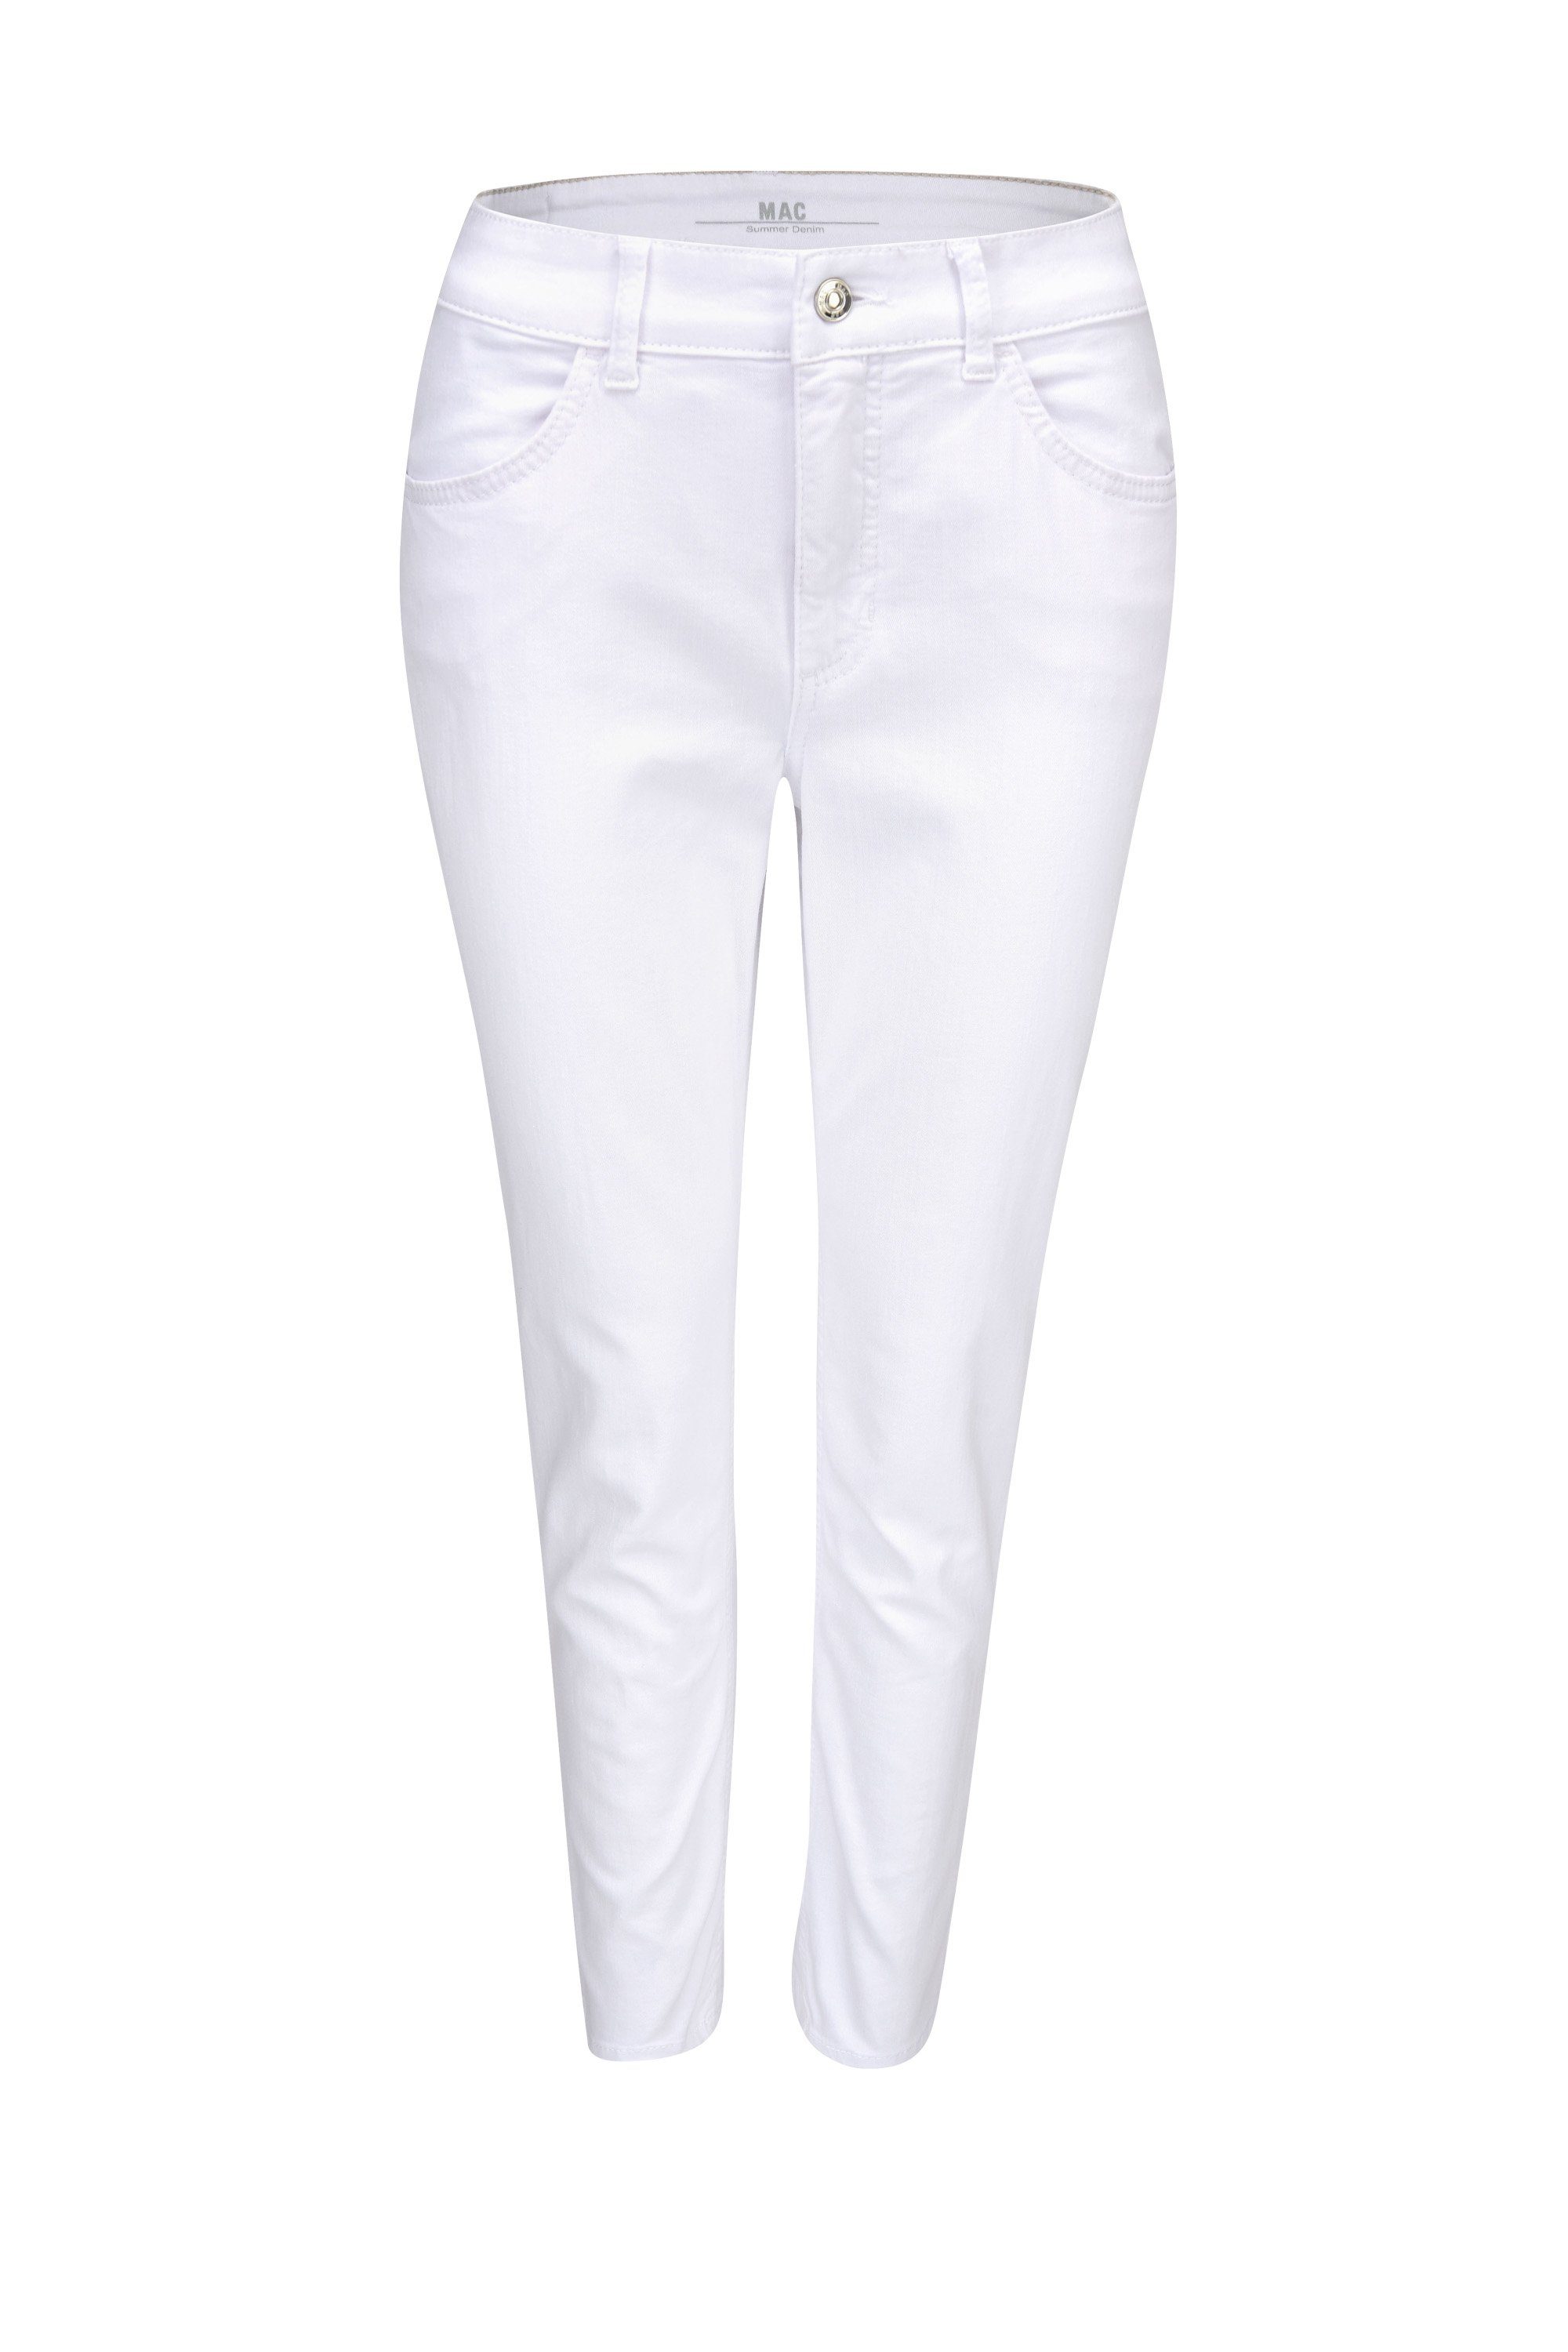 MAC Stretch-Jeans MAC MELANIE 7/8 SUMMER clean white denim 5034-90-0371L-D010